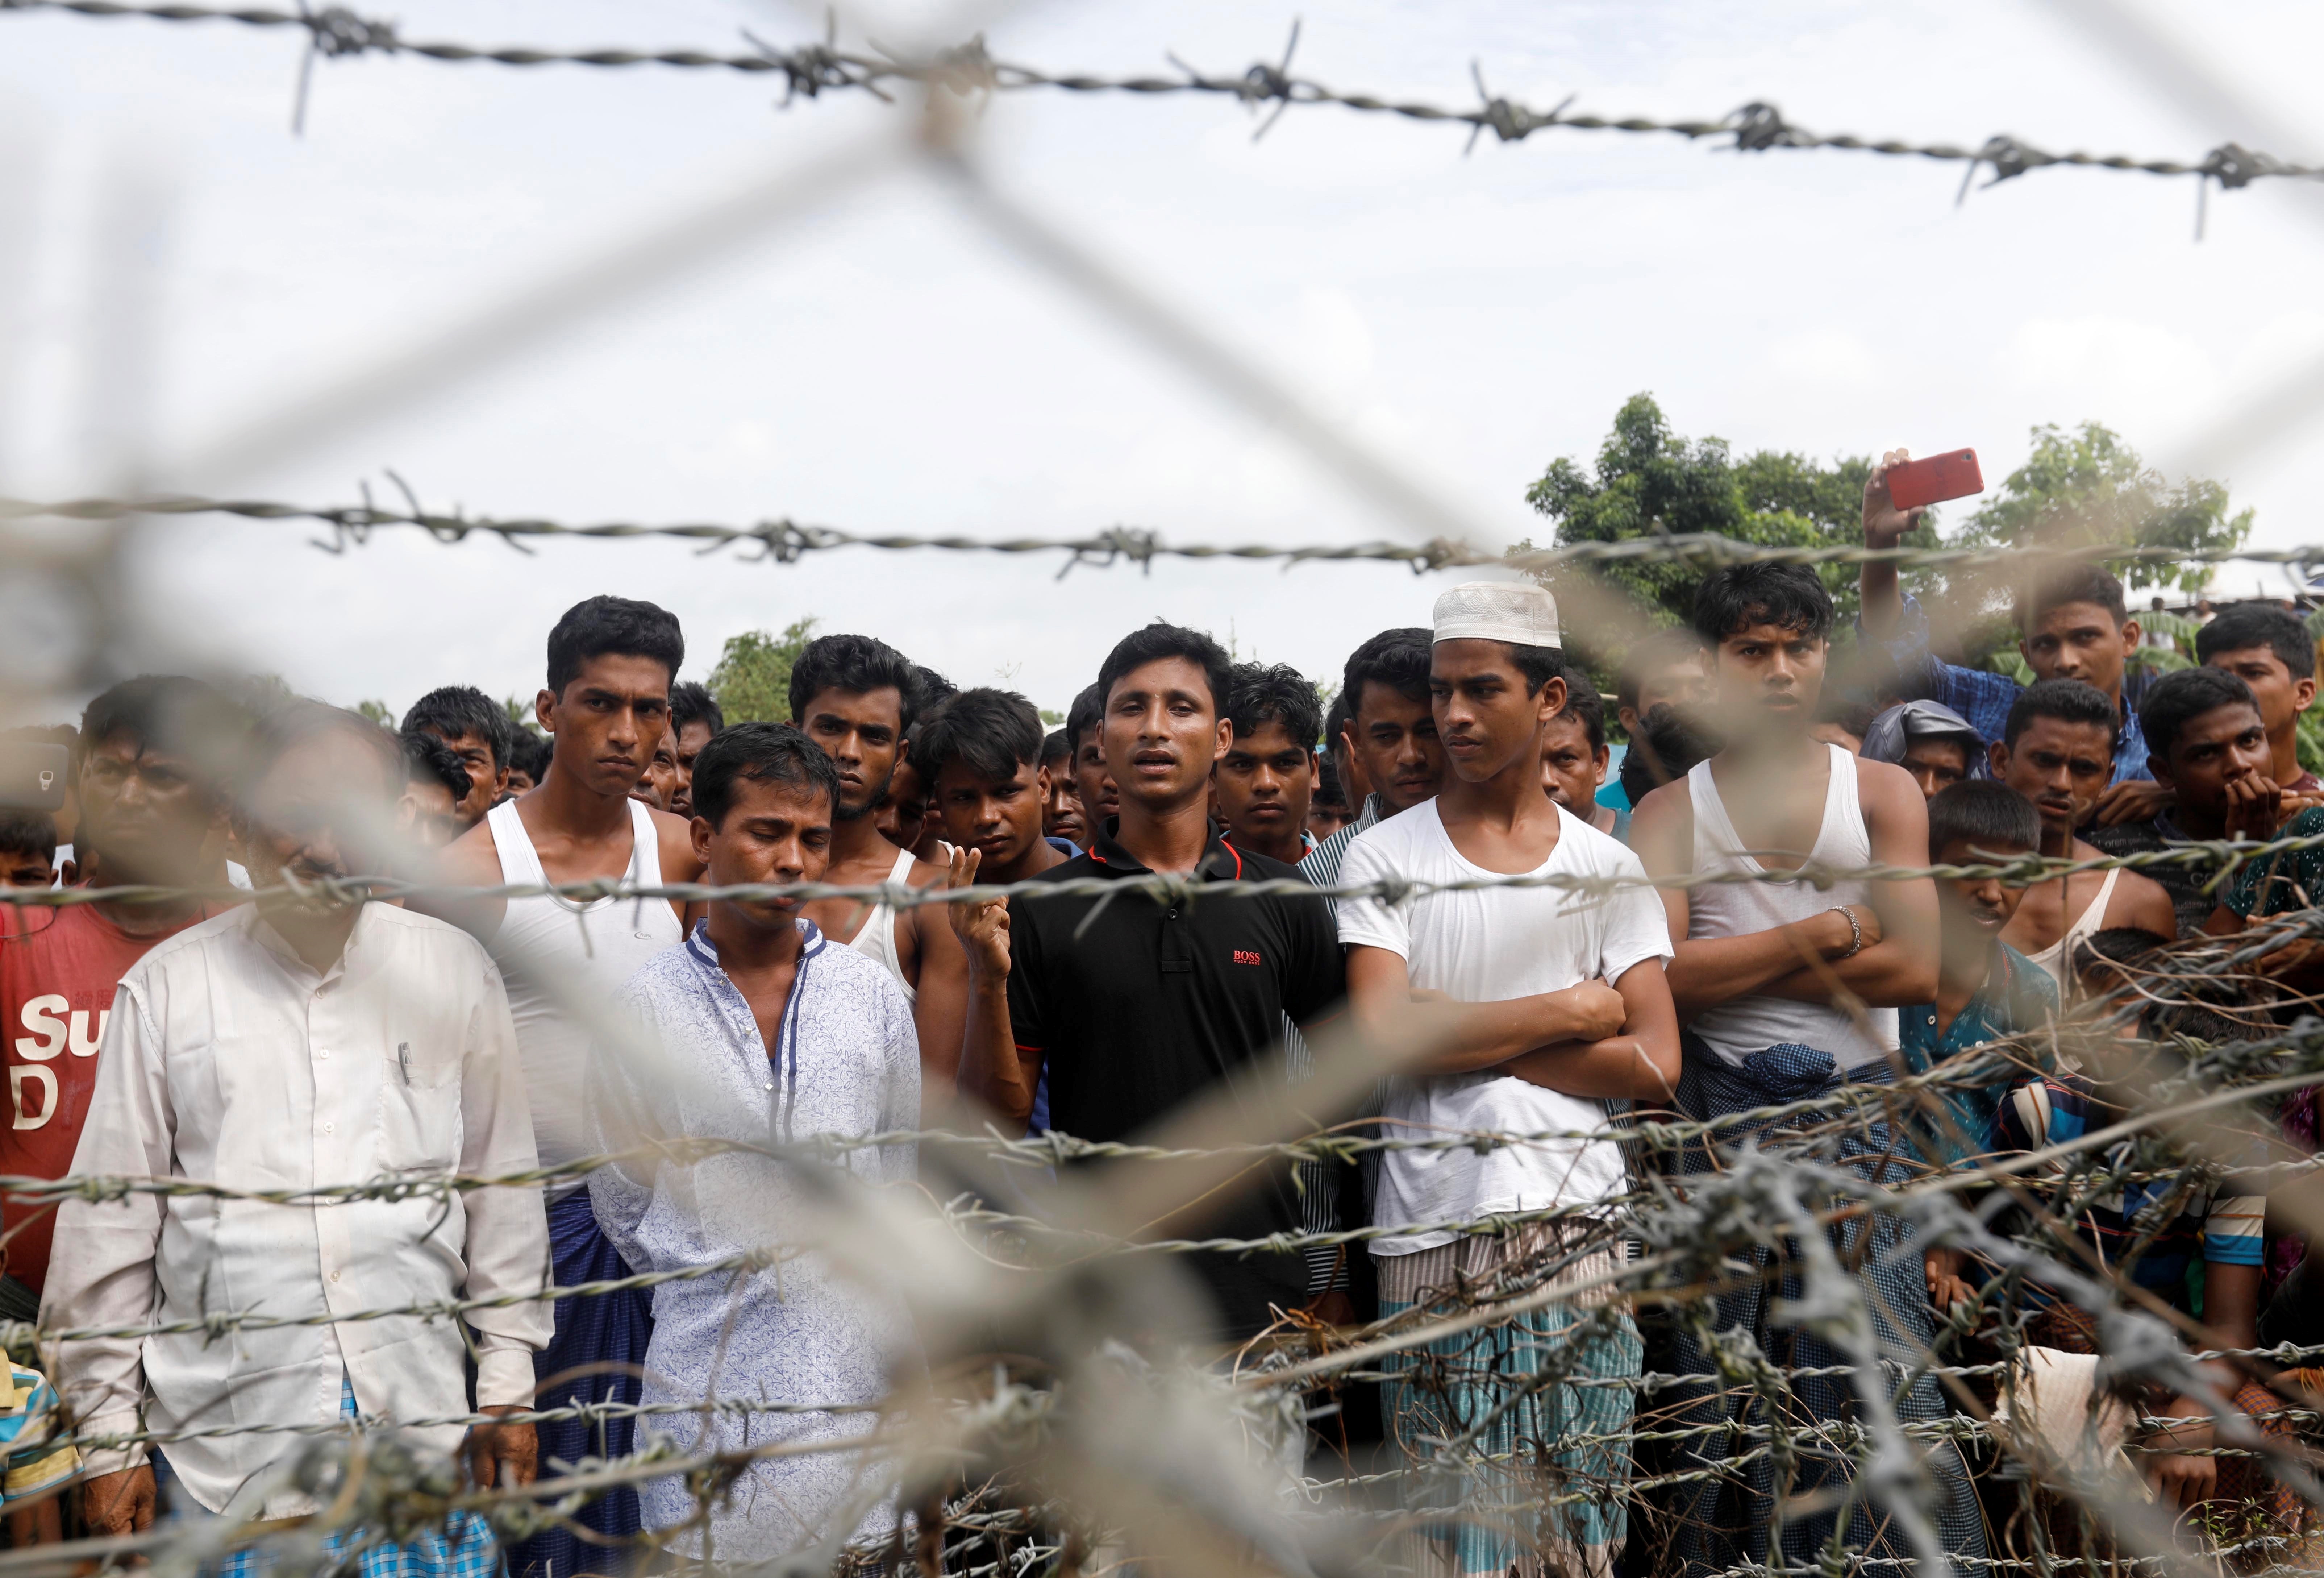 Un grupo de refugiados rohinyá tras una valla en "tierra de nadie" entre la frontera de Bangladesh y Birmania en el distrito de Maungdaw, estado Rakhine, oeste de Birmania. (EFE/ Nyein Chan Naing/Archivo)
